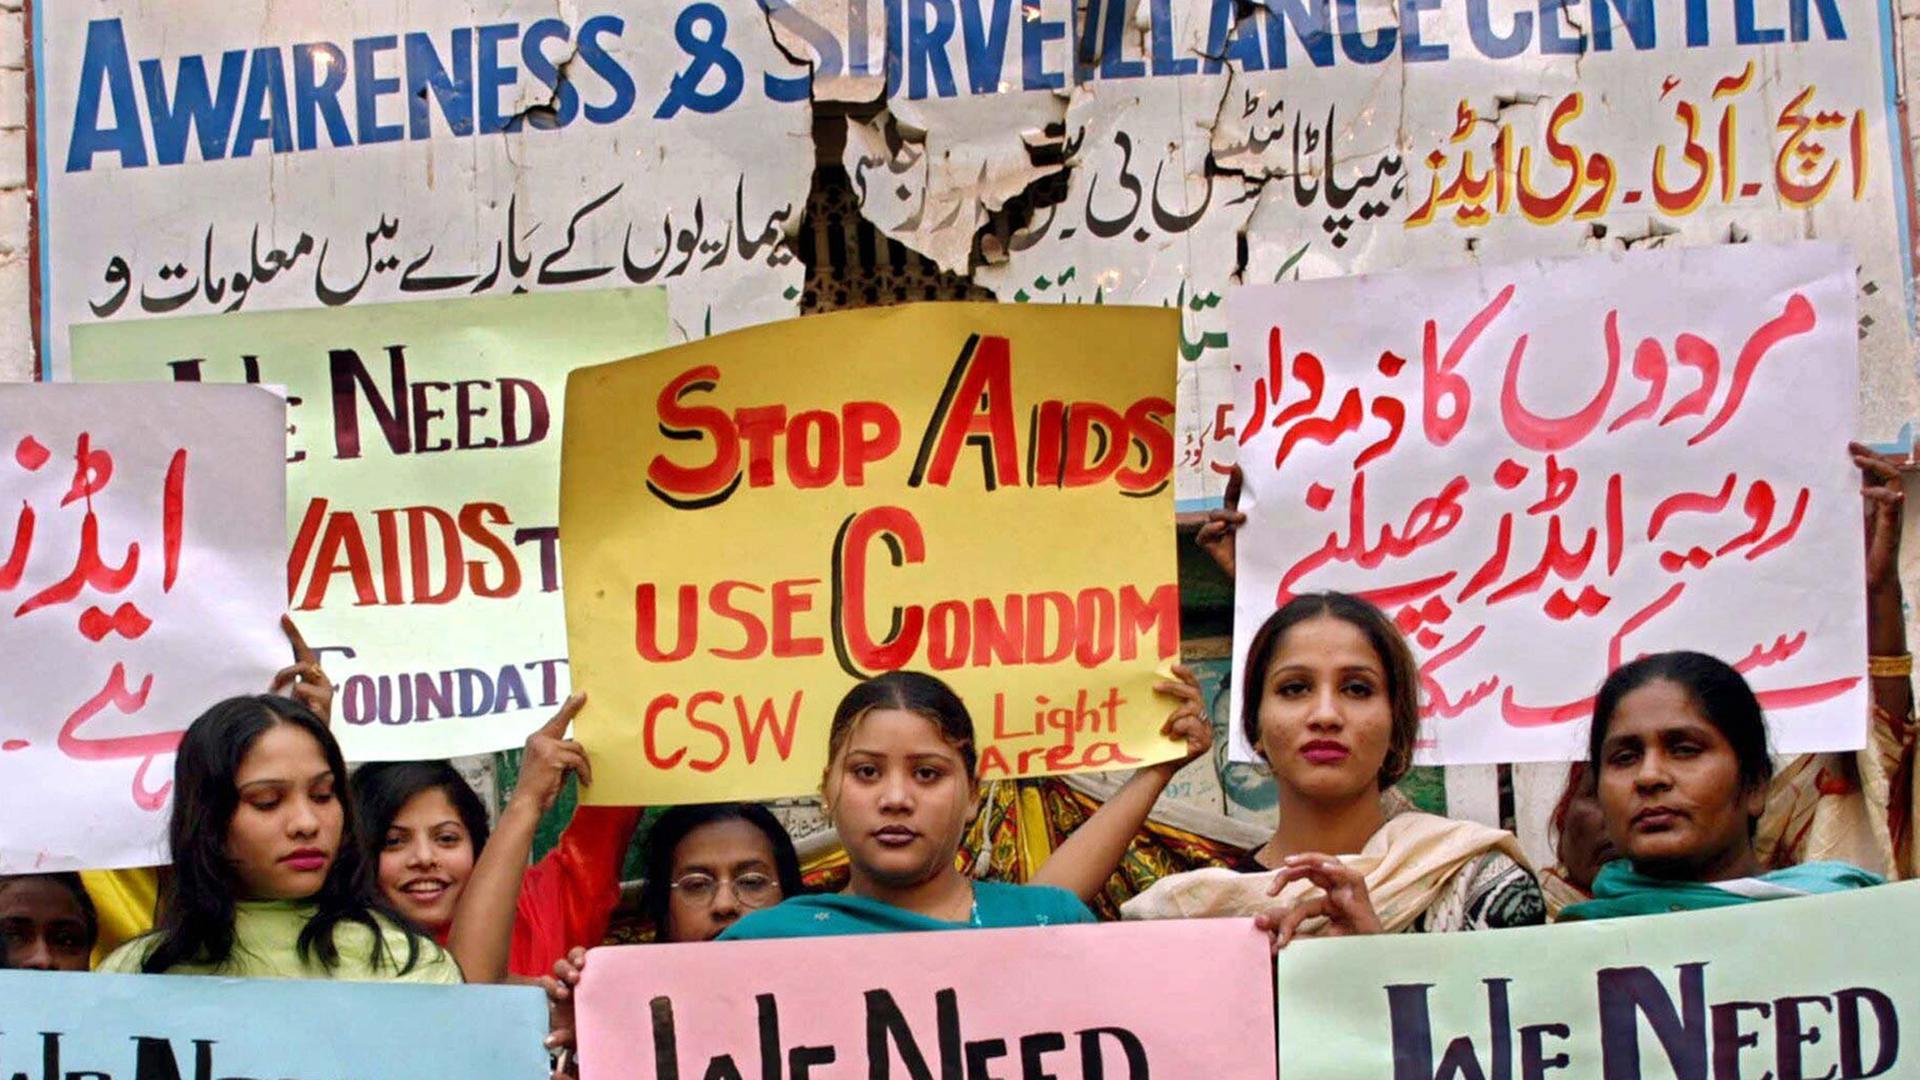 Pakistanische Prostituierte demonstrieren zum Welt-Aids-Tag 2003